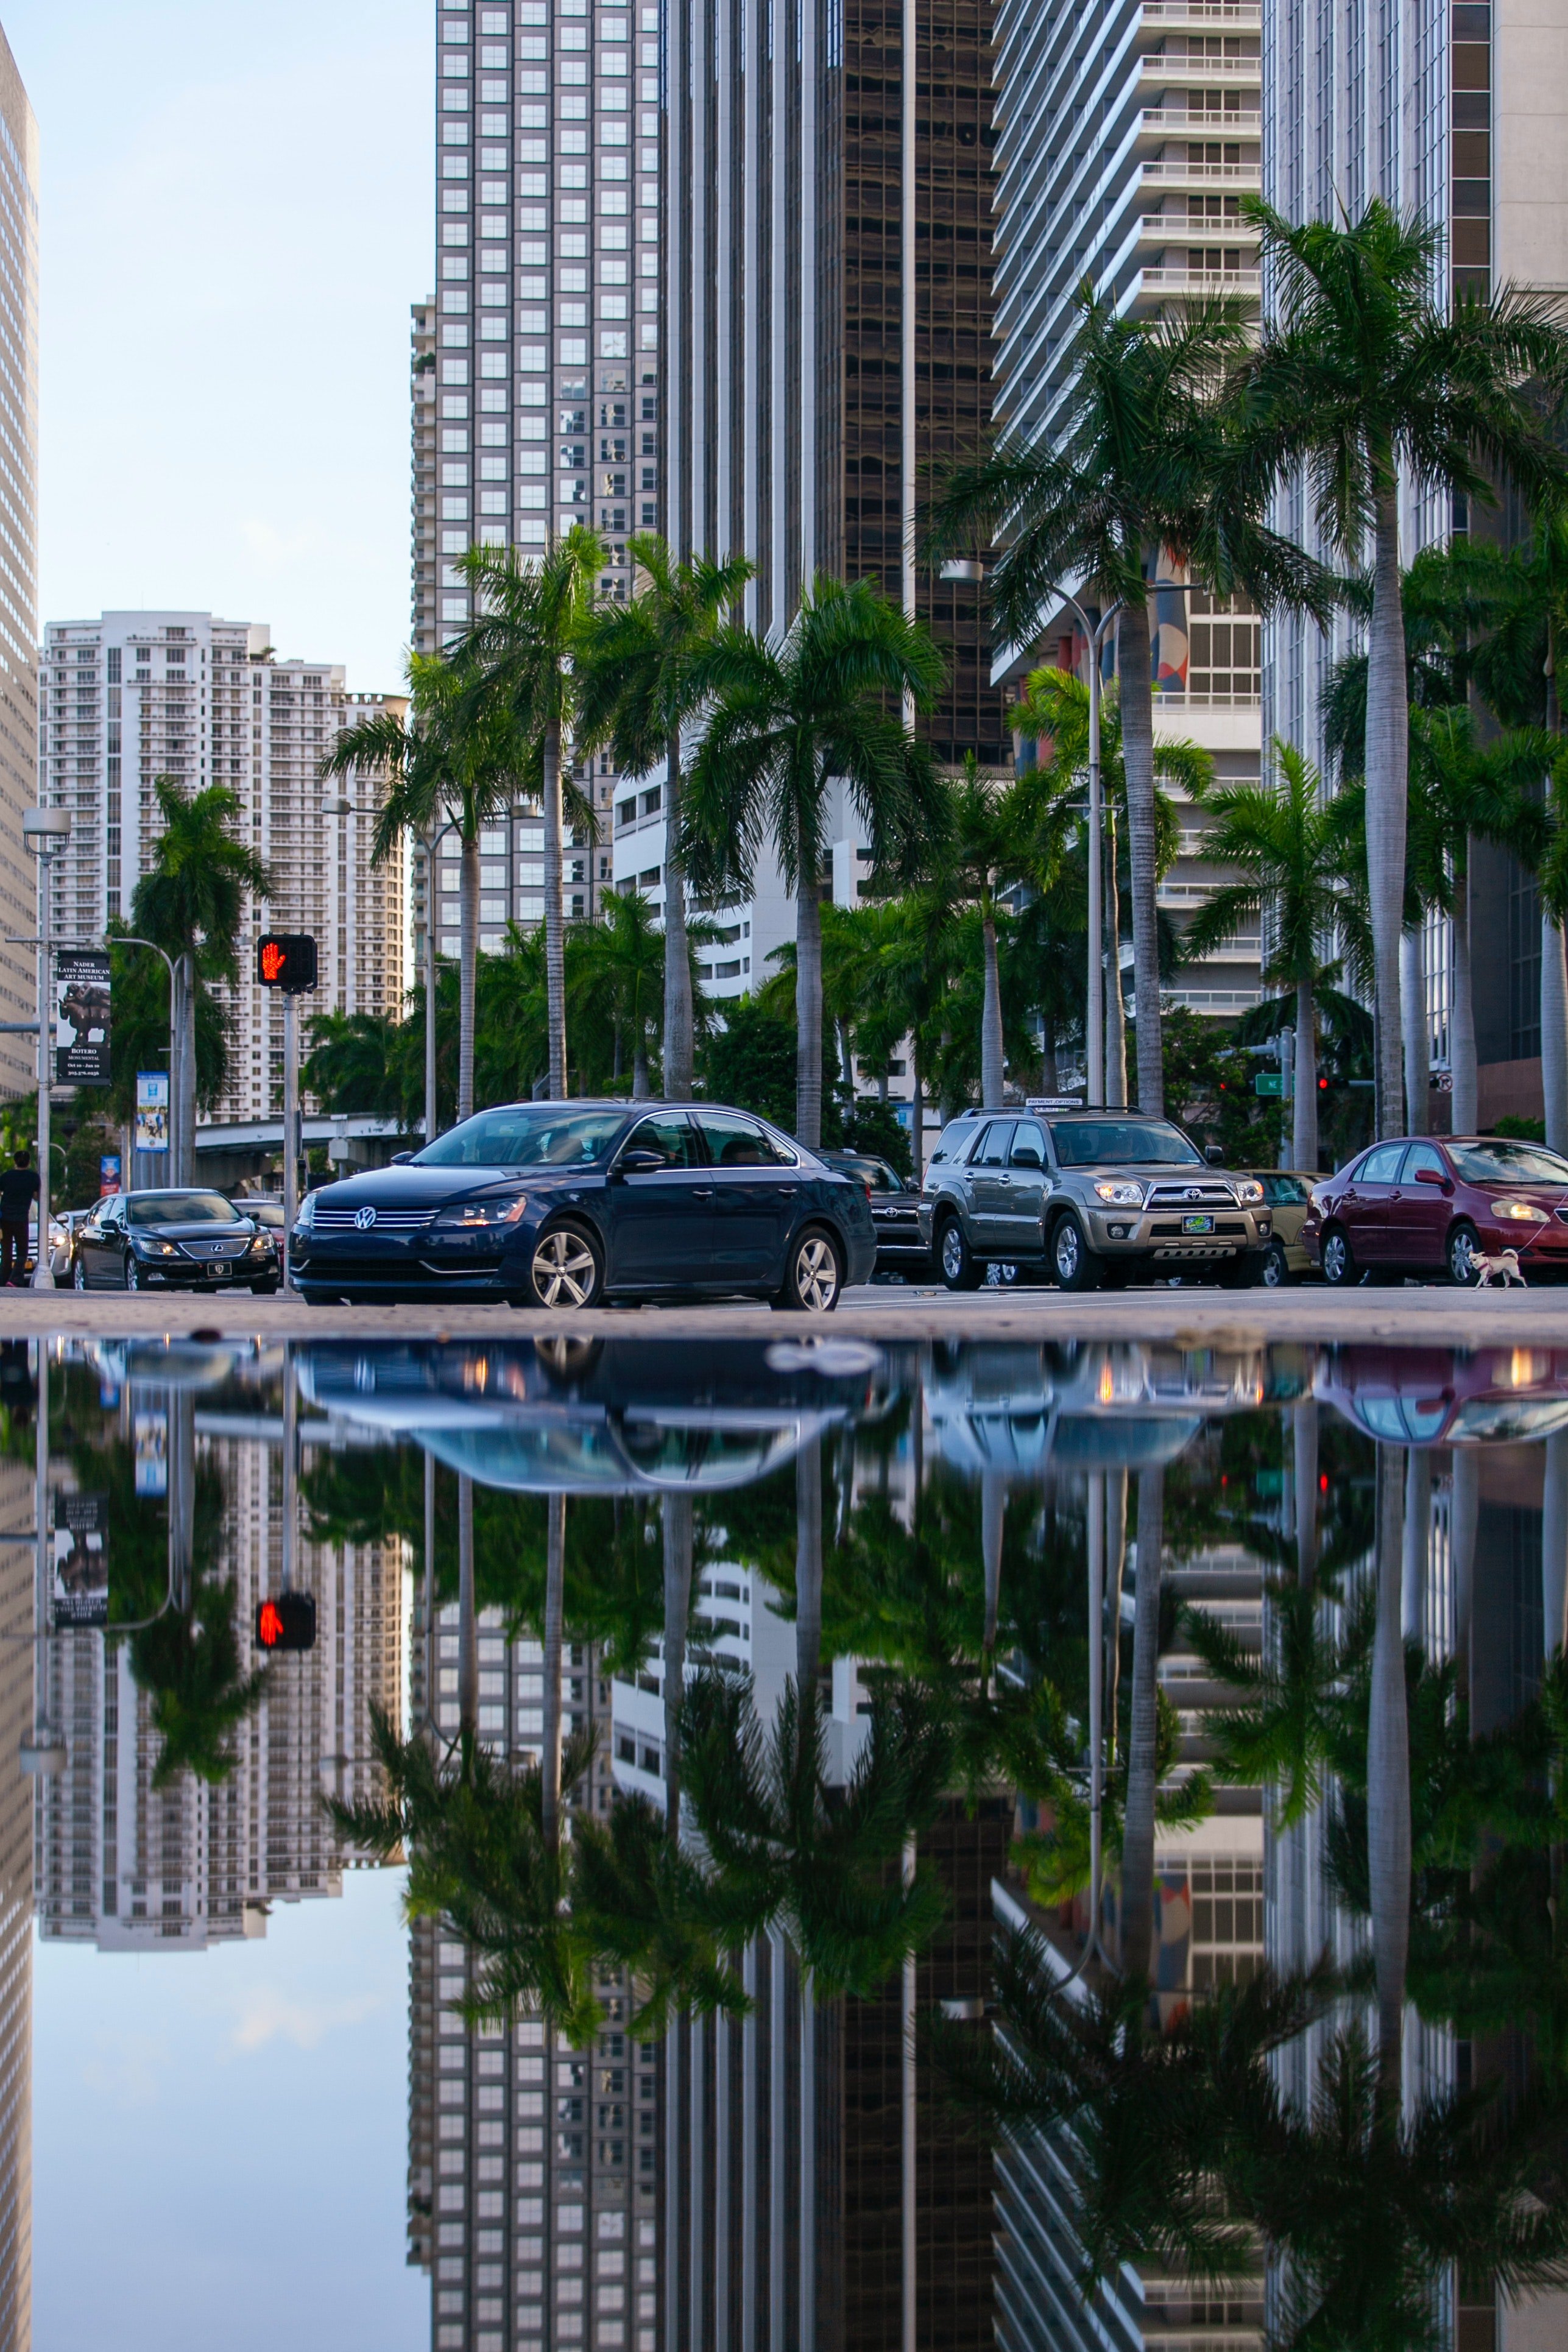 Automóviles y edifcios en una ciudad reflejados en la superficie del agua. | Foto: Pexels